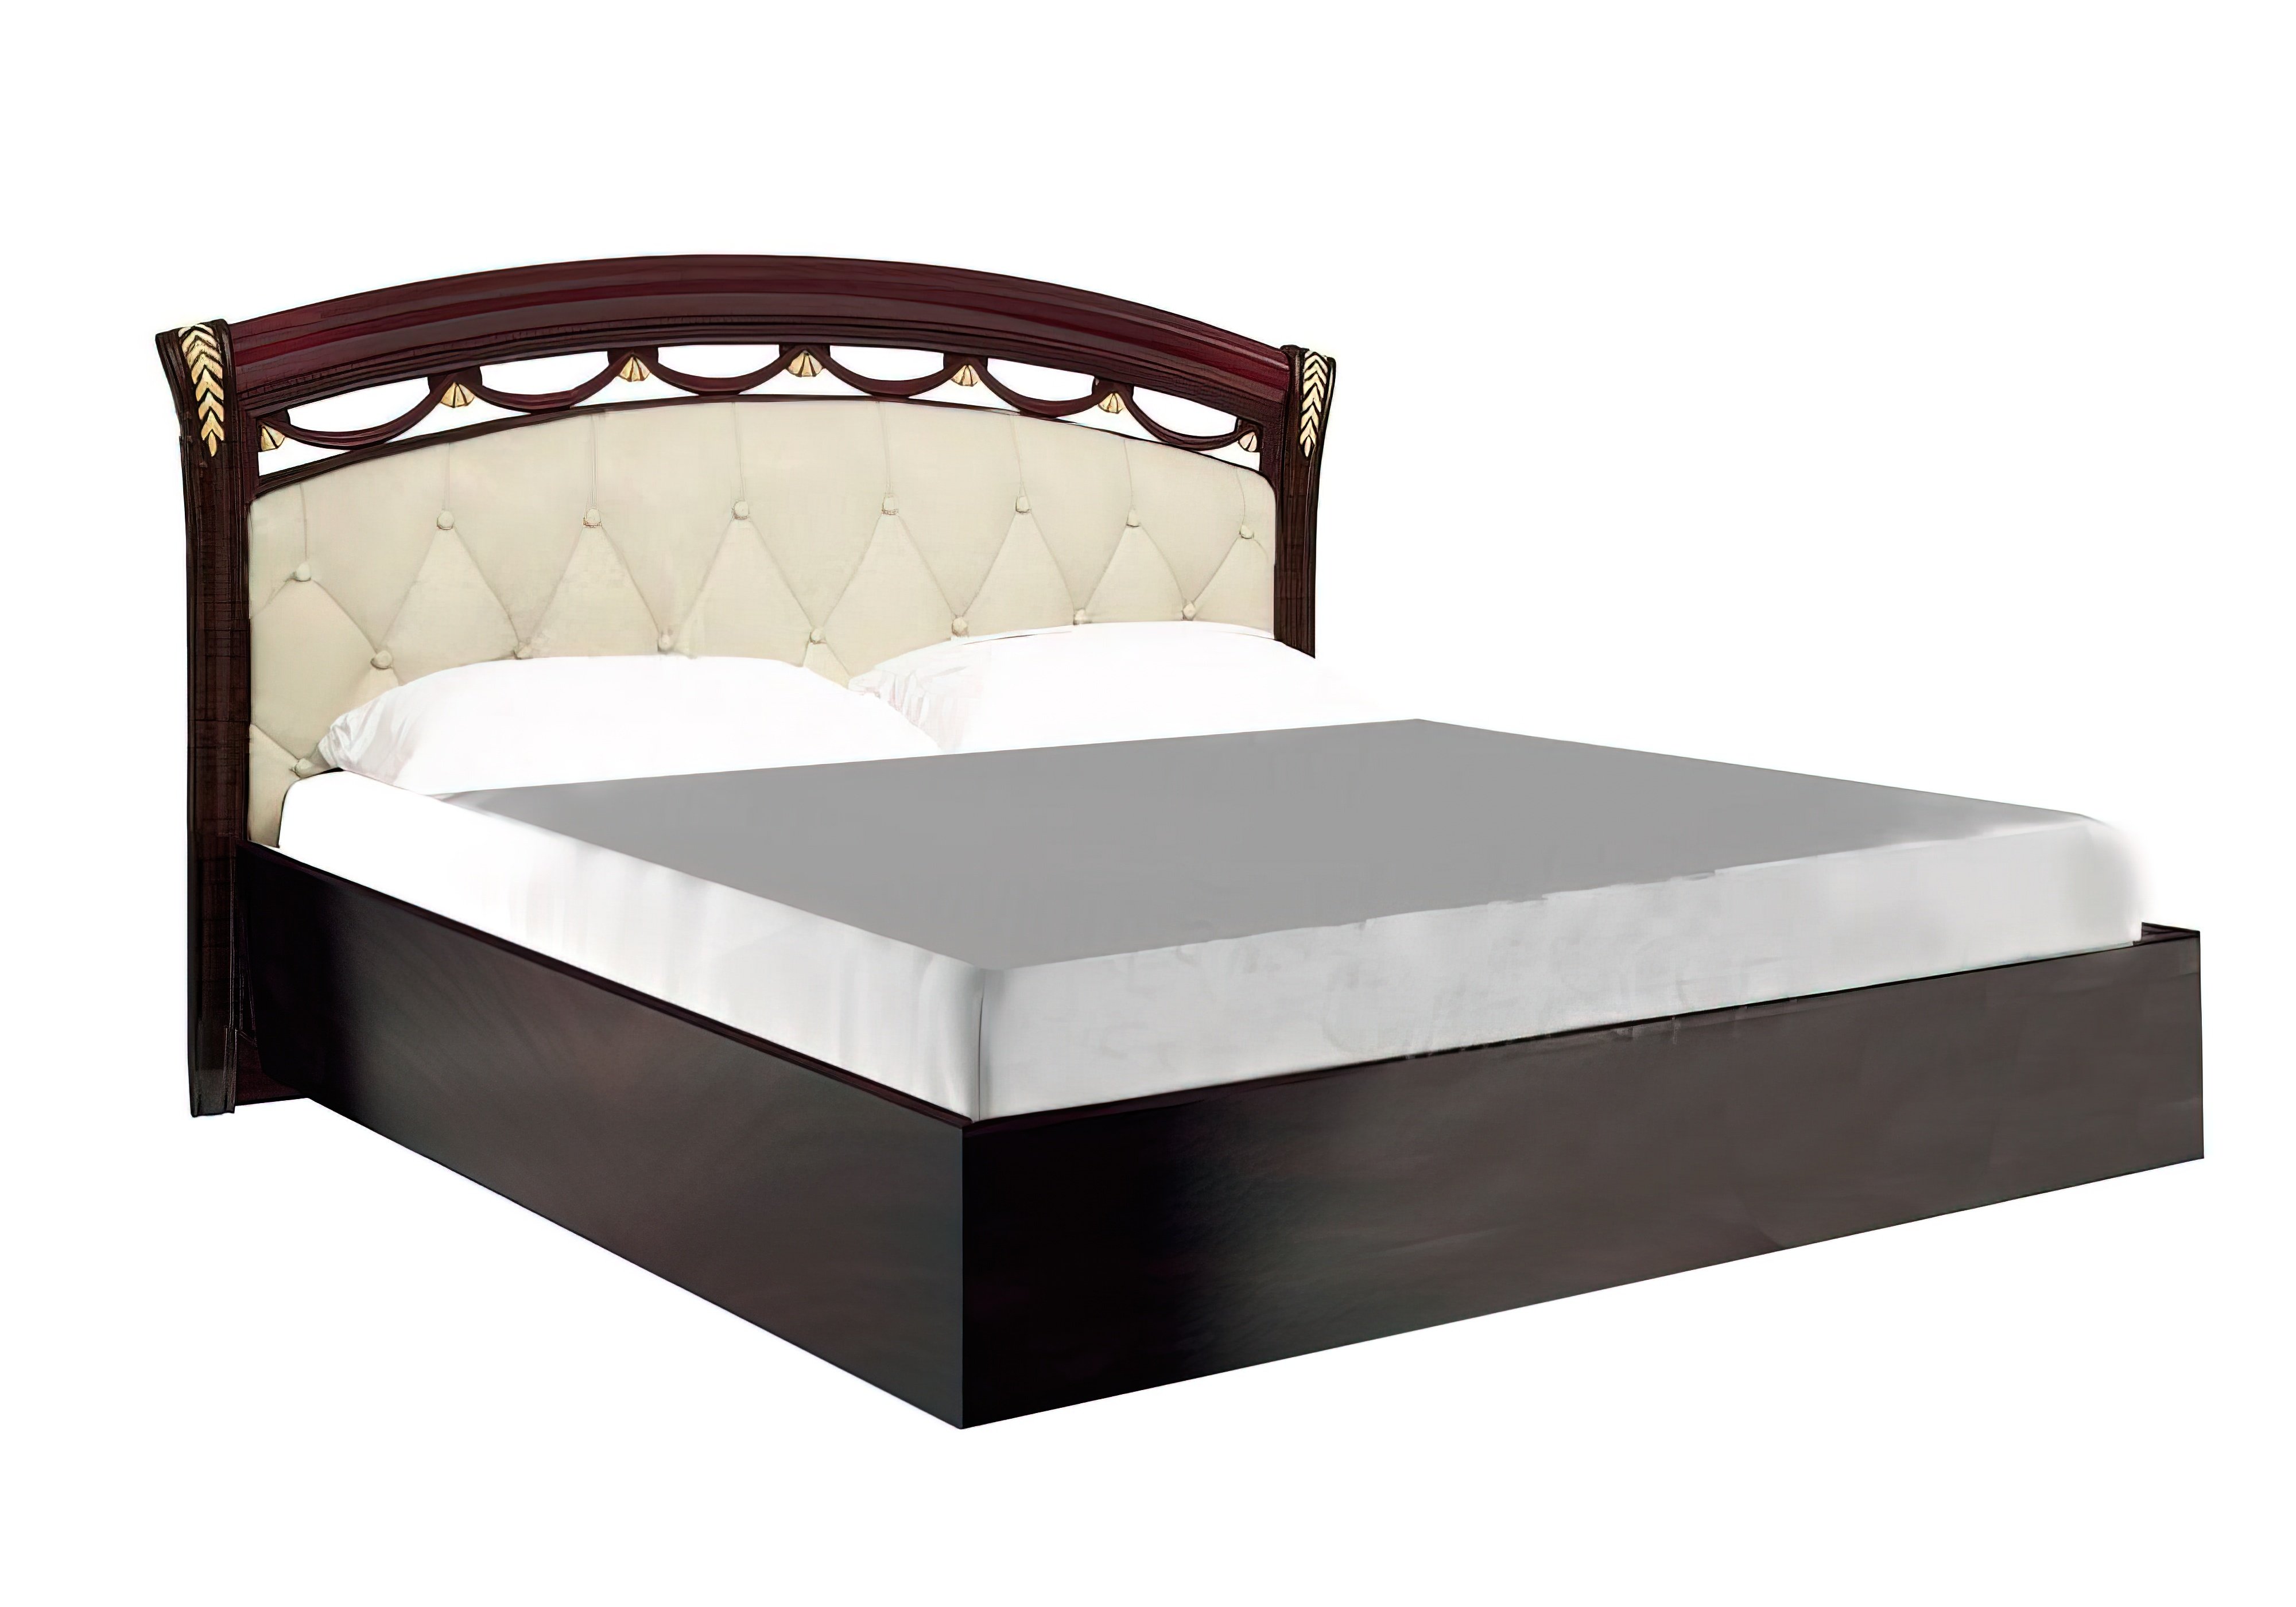  Купить Кровати с подъемным механизмом Кровать с подъемным механизмом "Роселла с мягким изголовьем" MiroMark